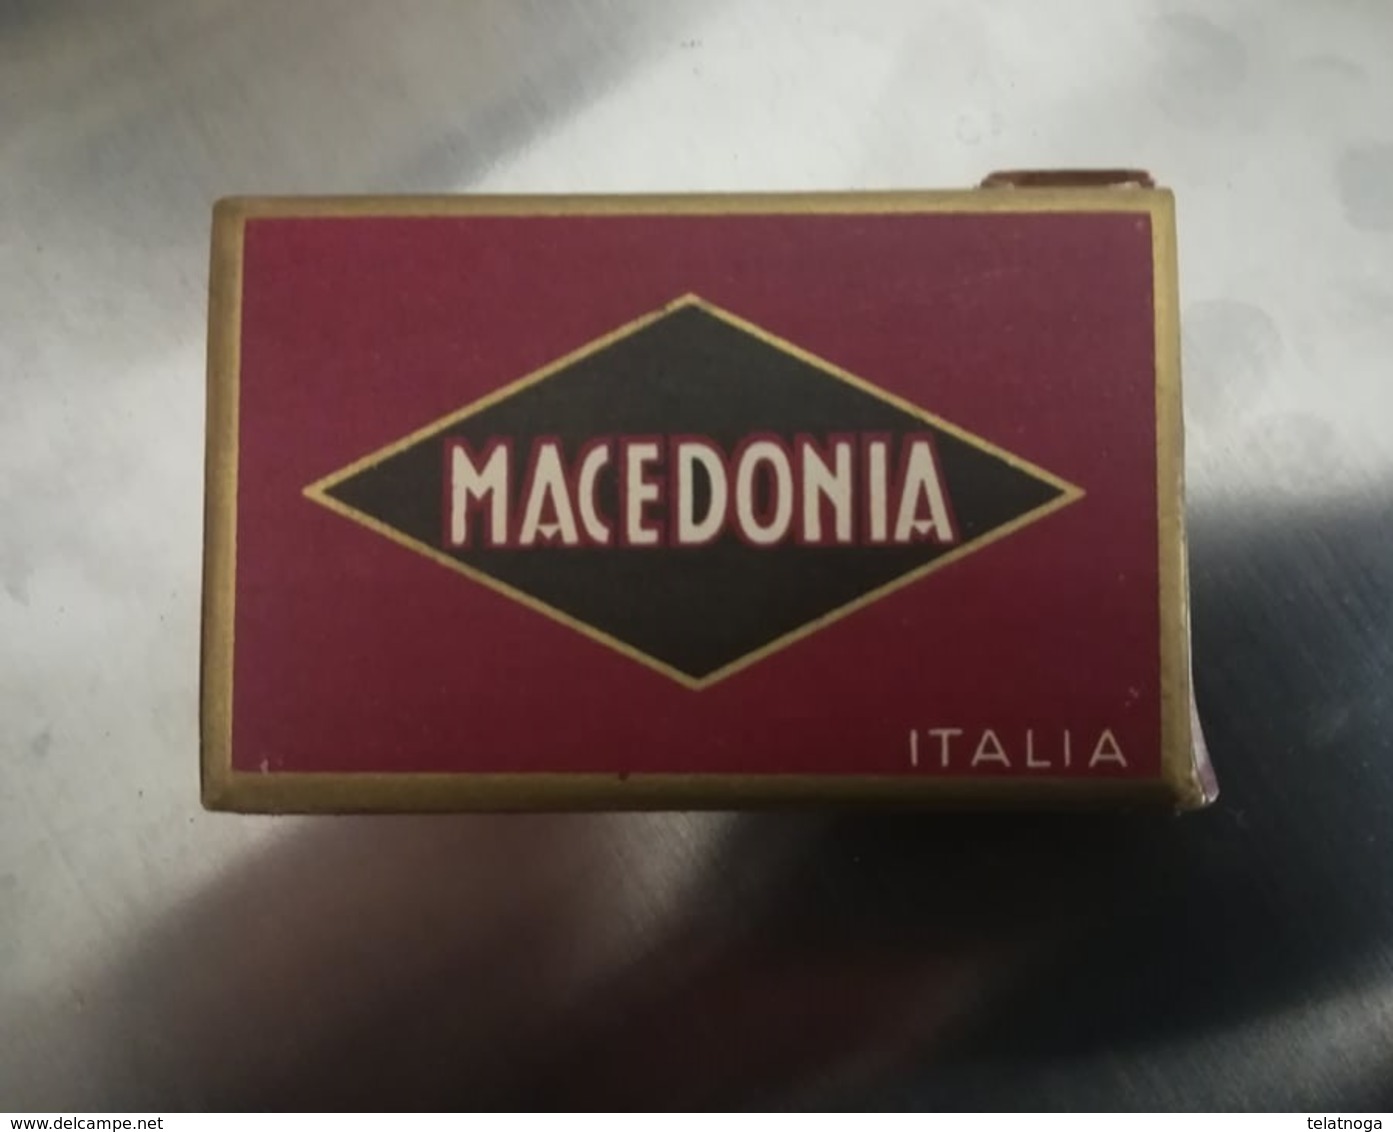 SCATOLINA SIGARETTE "MACEDONIA ITALIA" PRODOTTA IN GERMANIA SU LICENZA MONOPOLIO ITALIANO 1934 - Cajas Para Tabaco (vacios)